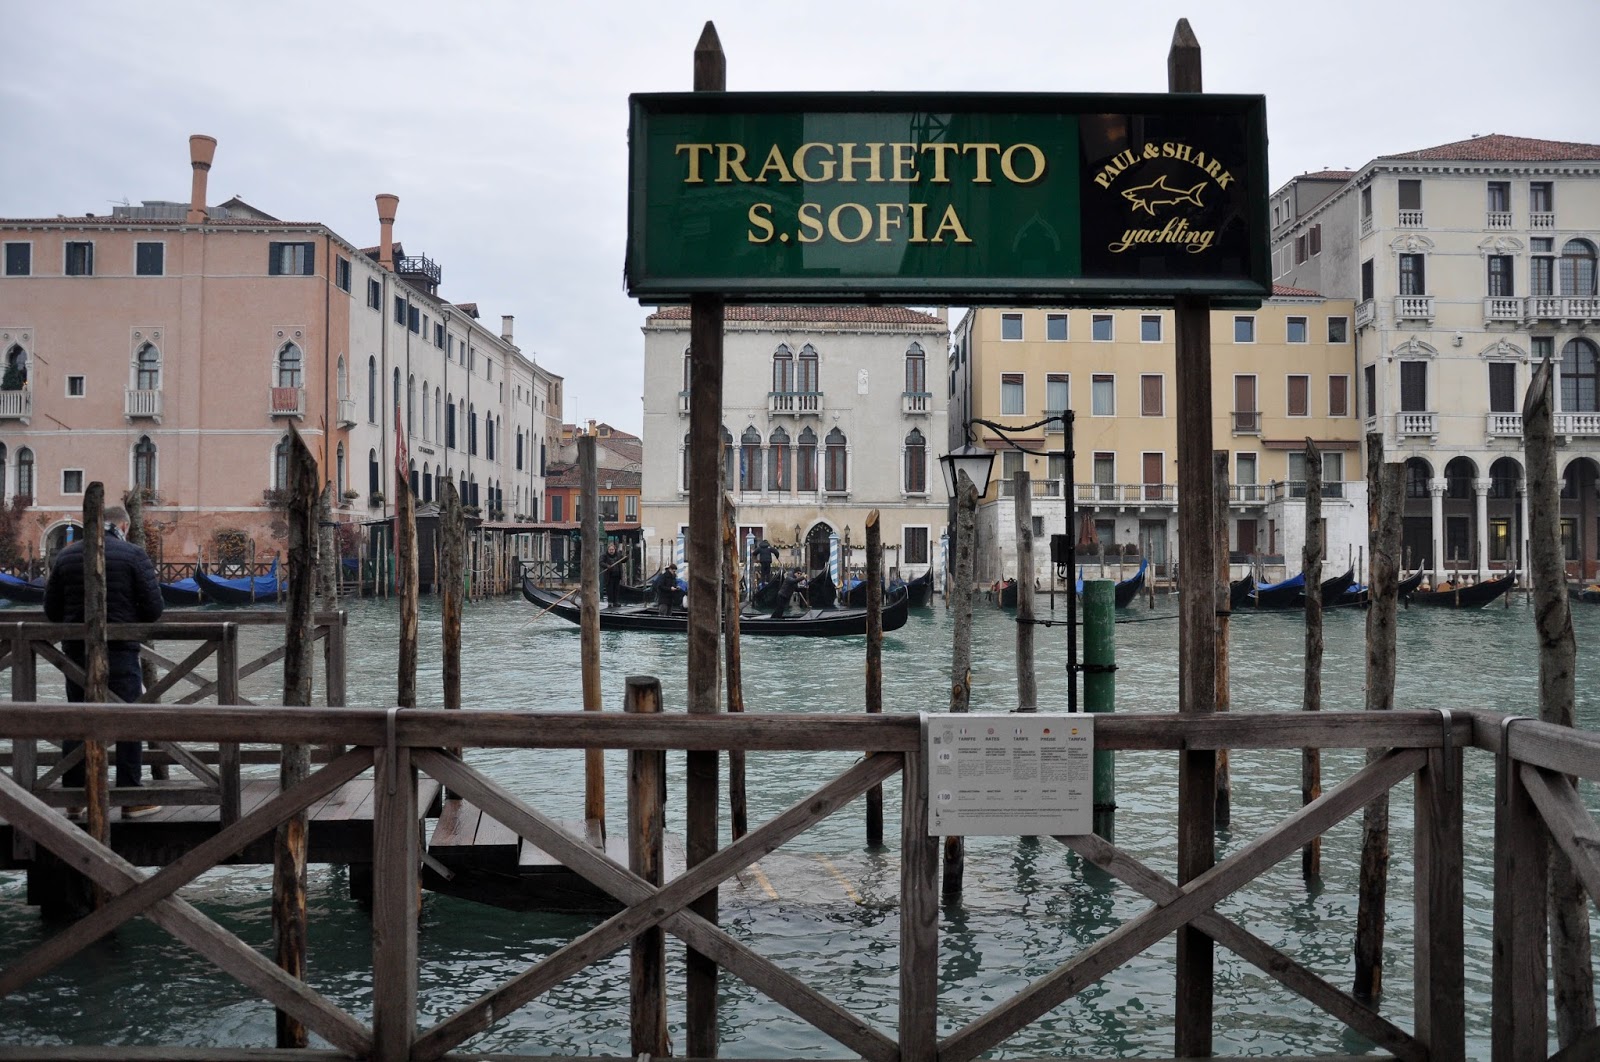 Traghetto S. Sofia stop, Venice, Italy